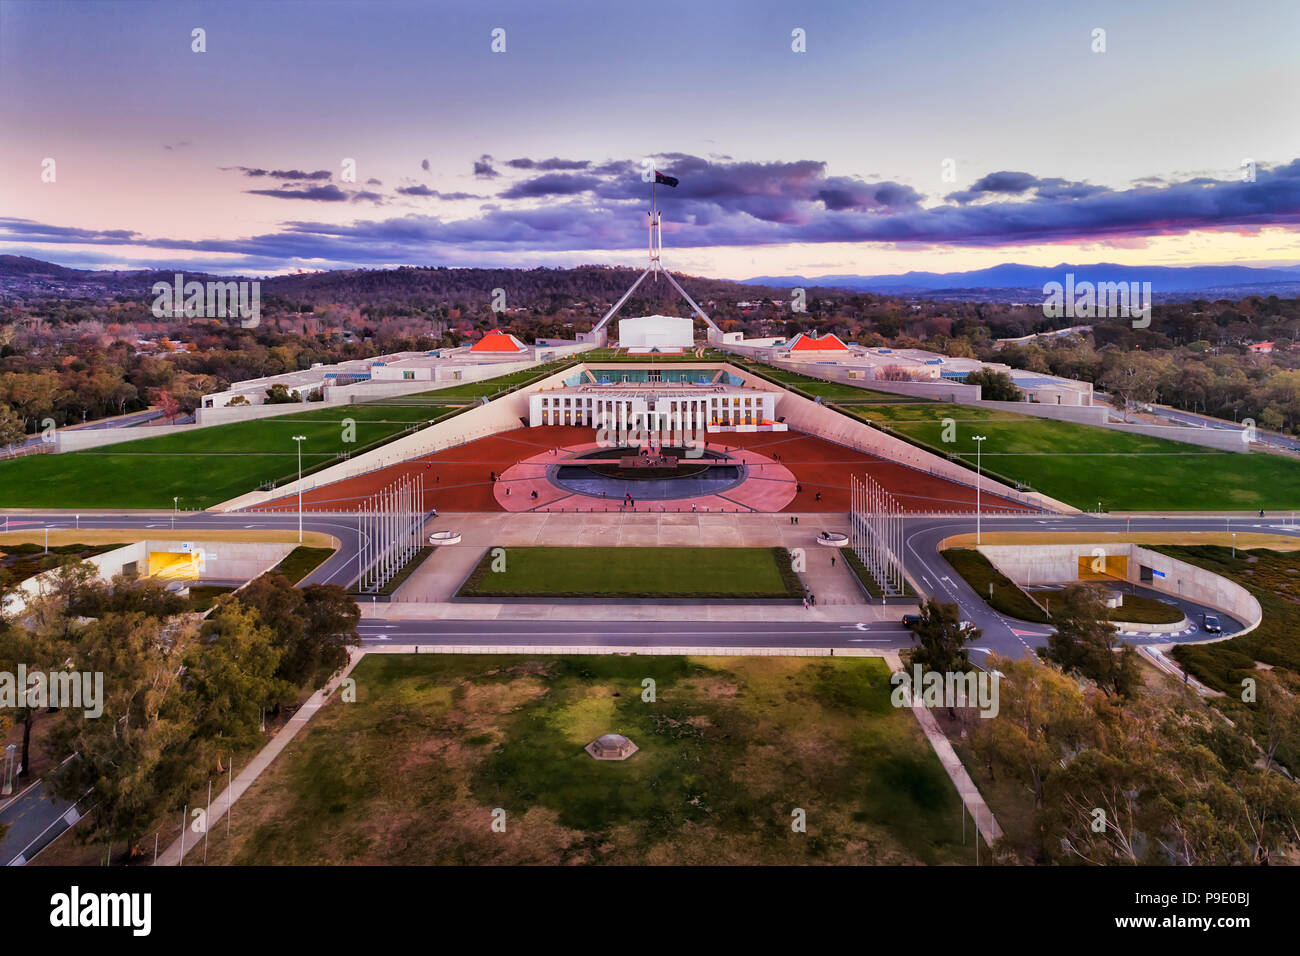 Vue aérienne autour de la colline du Capitole à Canberra - Territoire de la capitale australienne. Façade du bâtiment du gouvernement public avec square et parc Banque D'Images